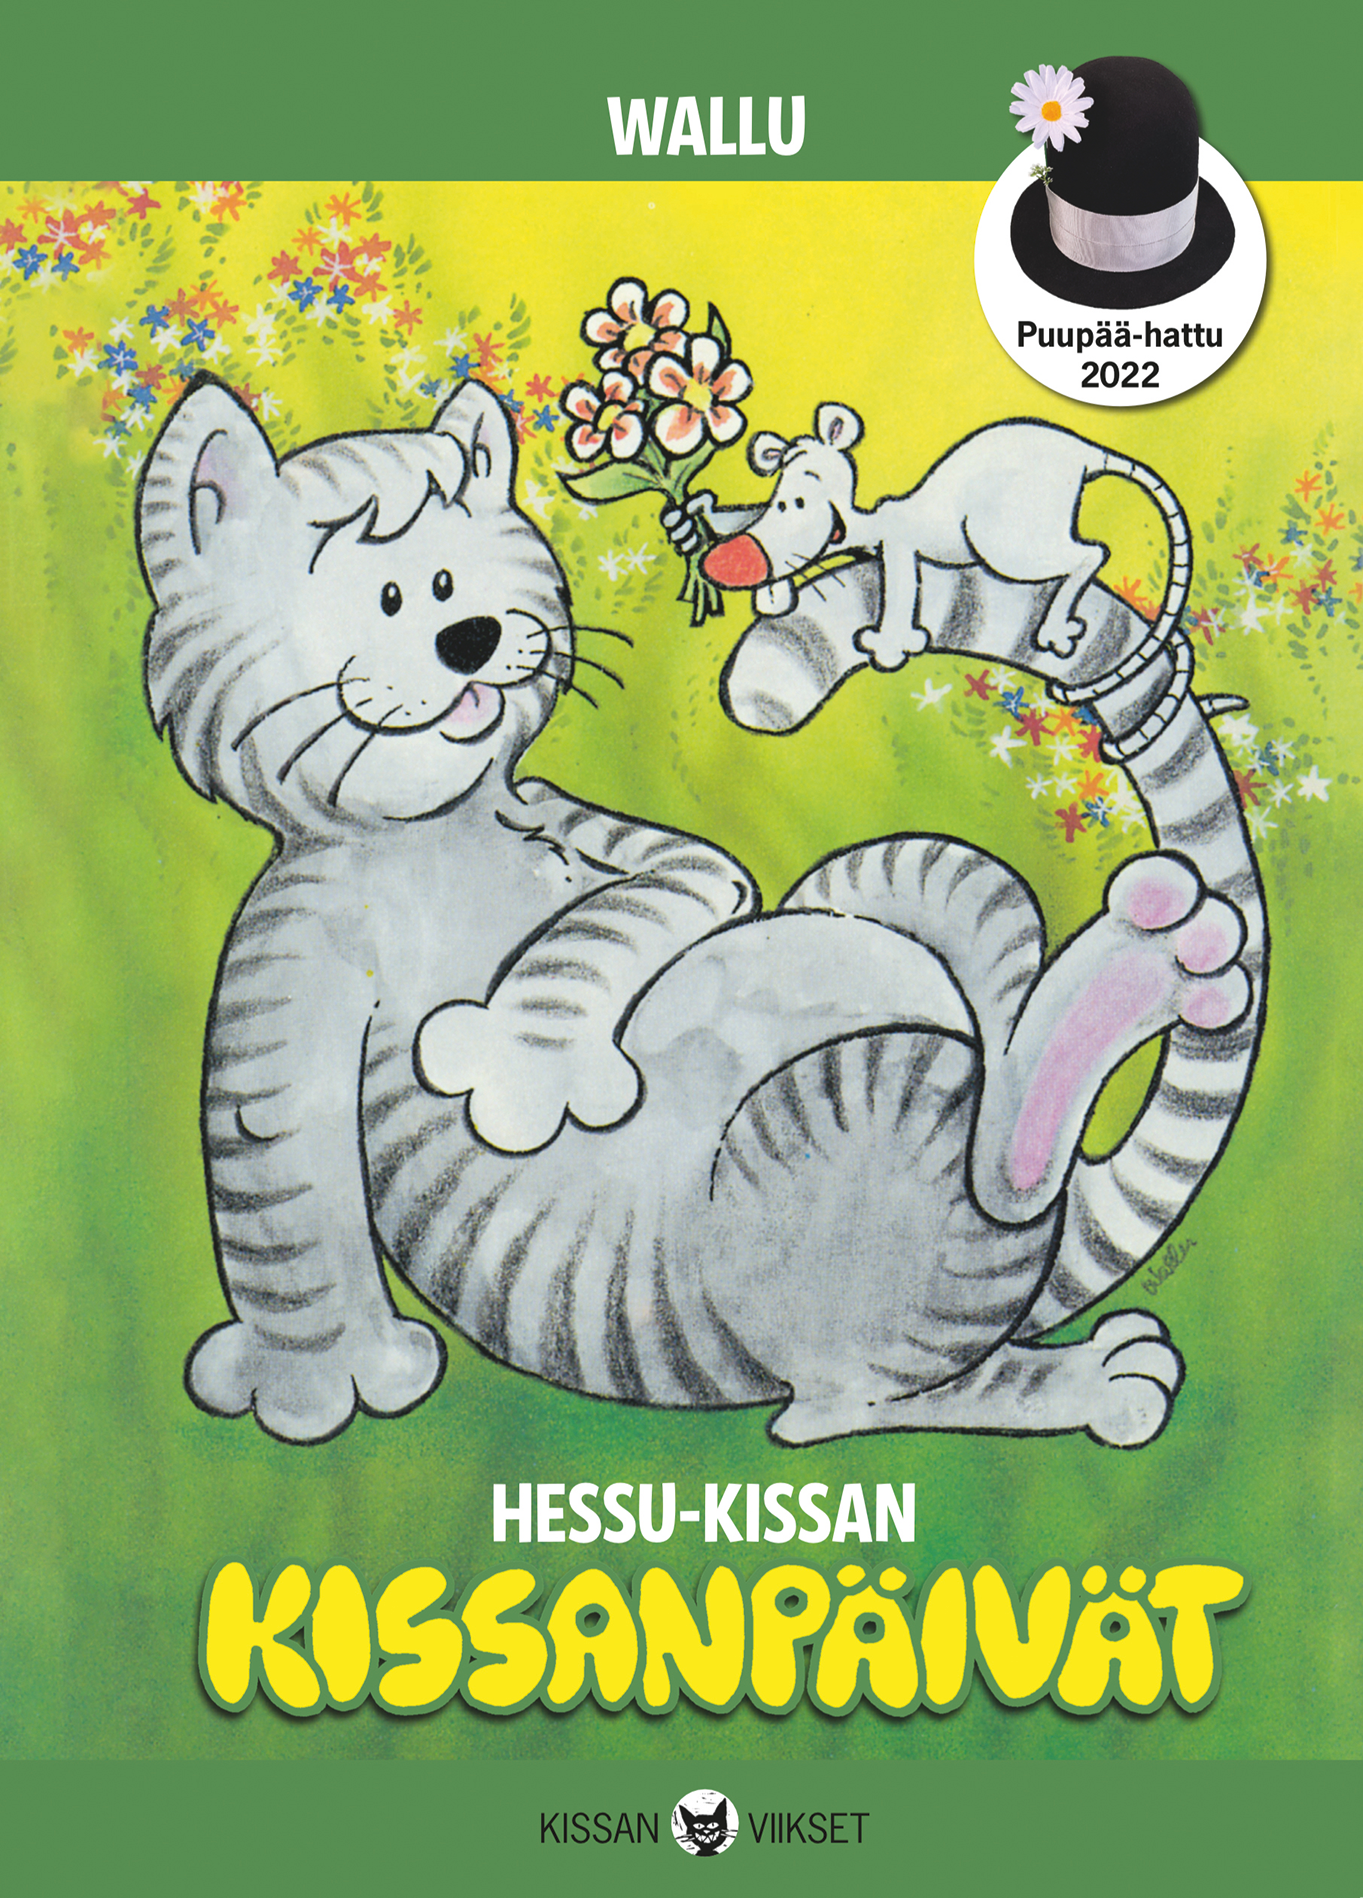 Hessu-kissan kissanpäivät - kanssi